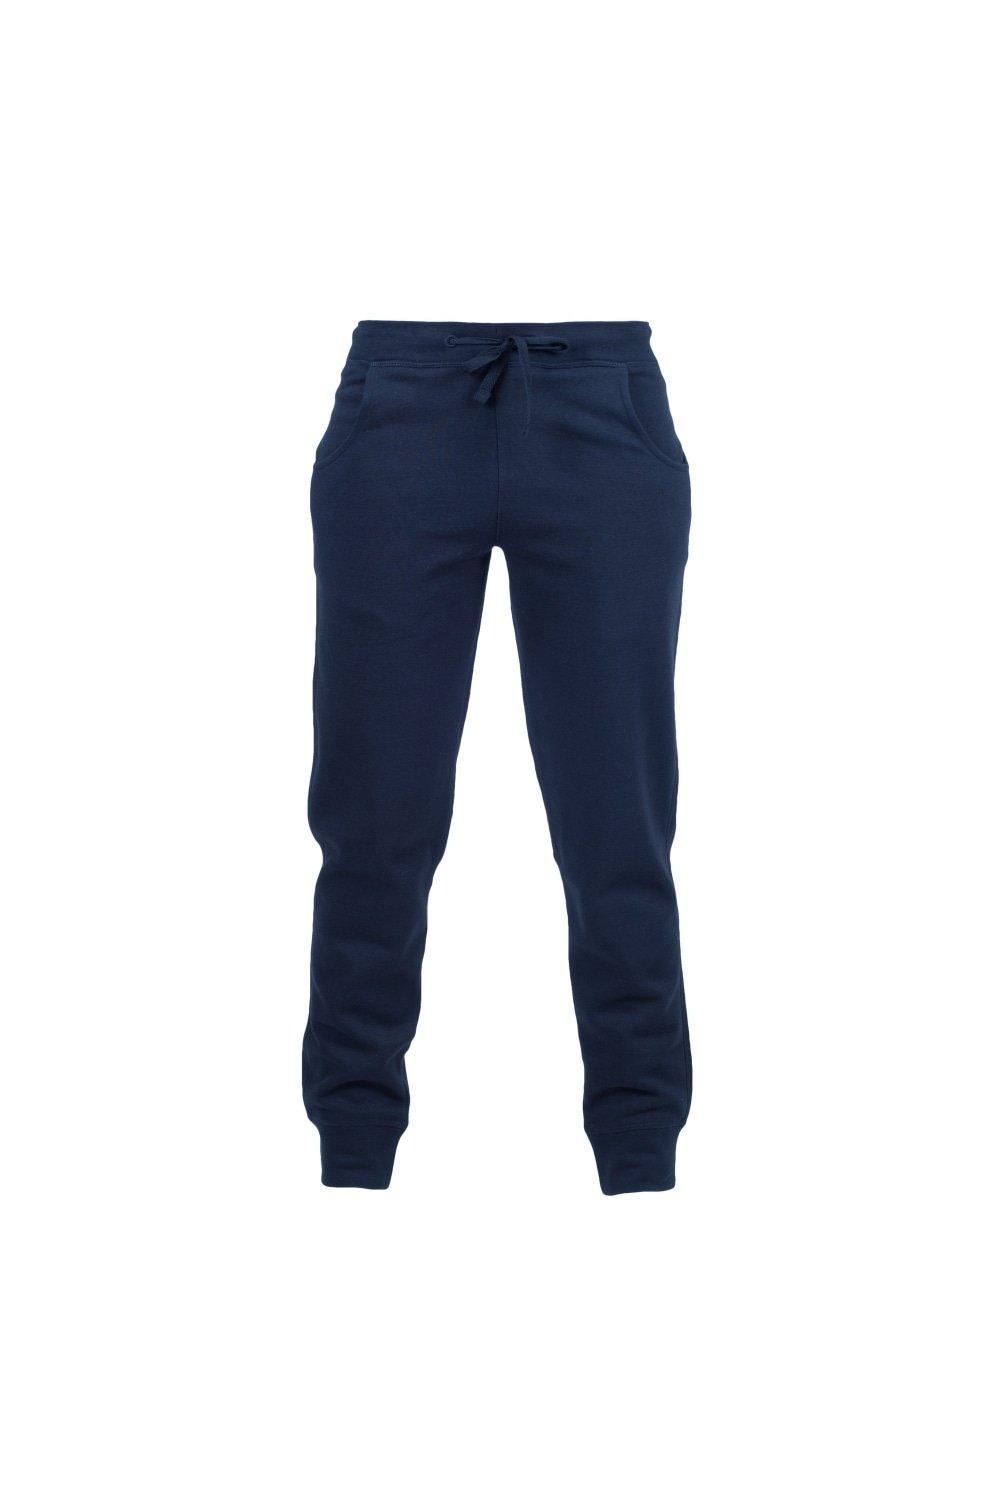 Узкие спортивные брюки Skinni Minni с манжетами (2 шт. в упаковке) Skinni Fit, темно-синий цена и фото